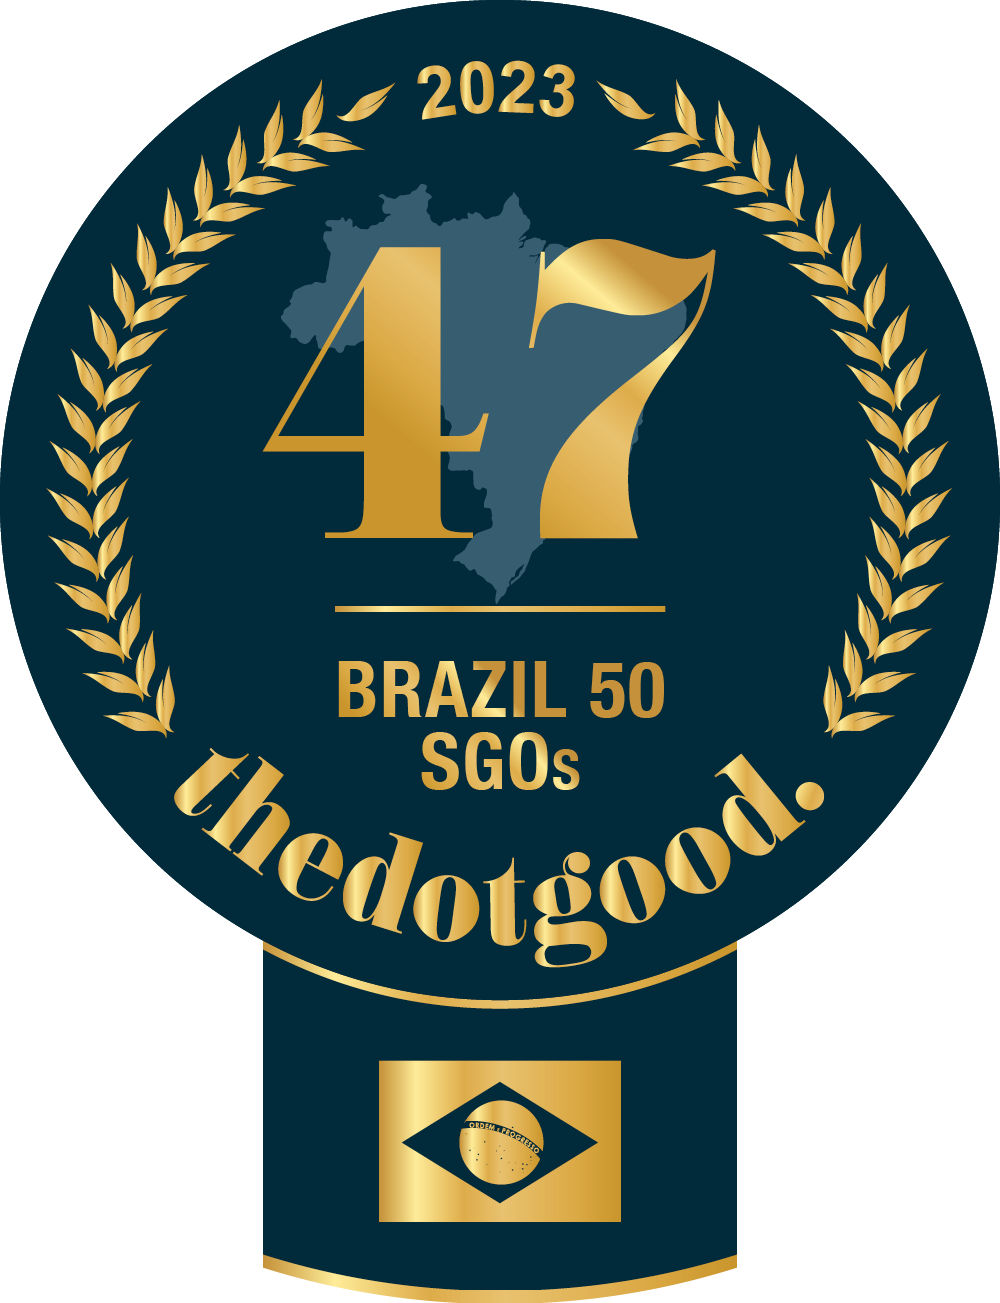 Associação Mineira de Reabilitação is brazil ranked on thedotgood.